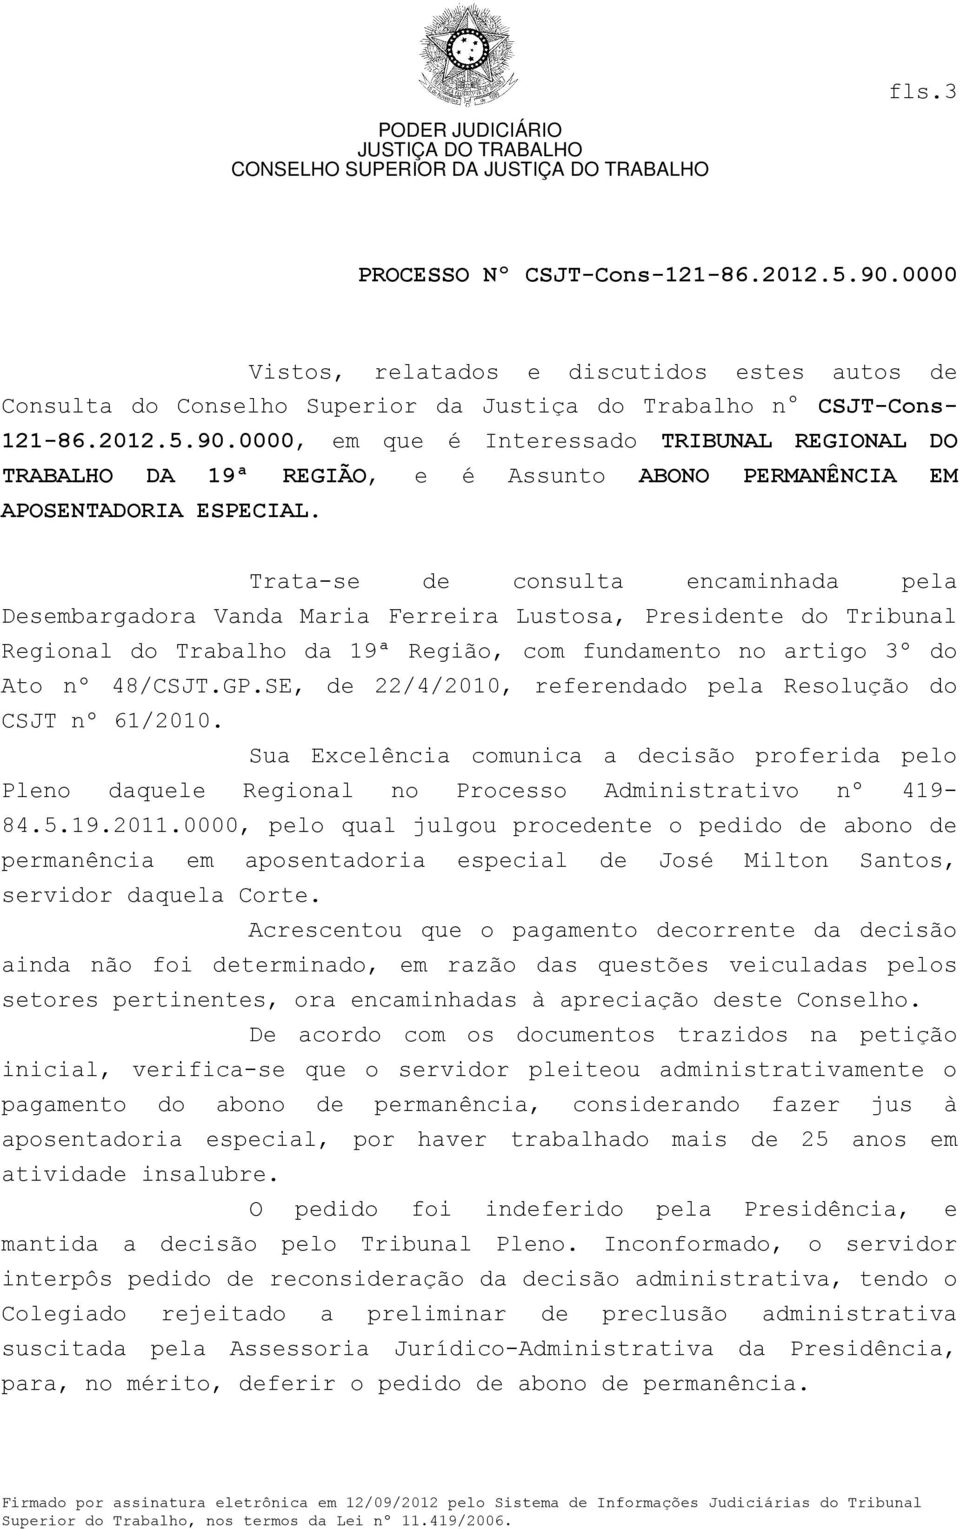 Trata-se de consulta encaminhada pela Desembargadora Vanda Maria Ferreira Lustosa, Presidente do Tribunal Regional do Trabalho da 19ª Região, com fundamento no artigo 3º do Ato nº 48/CSJT.GP.